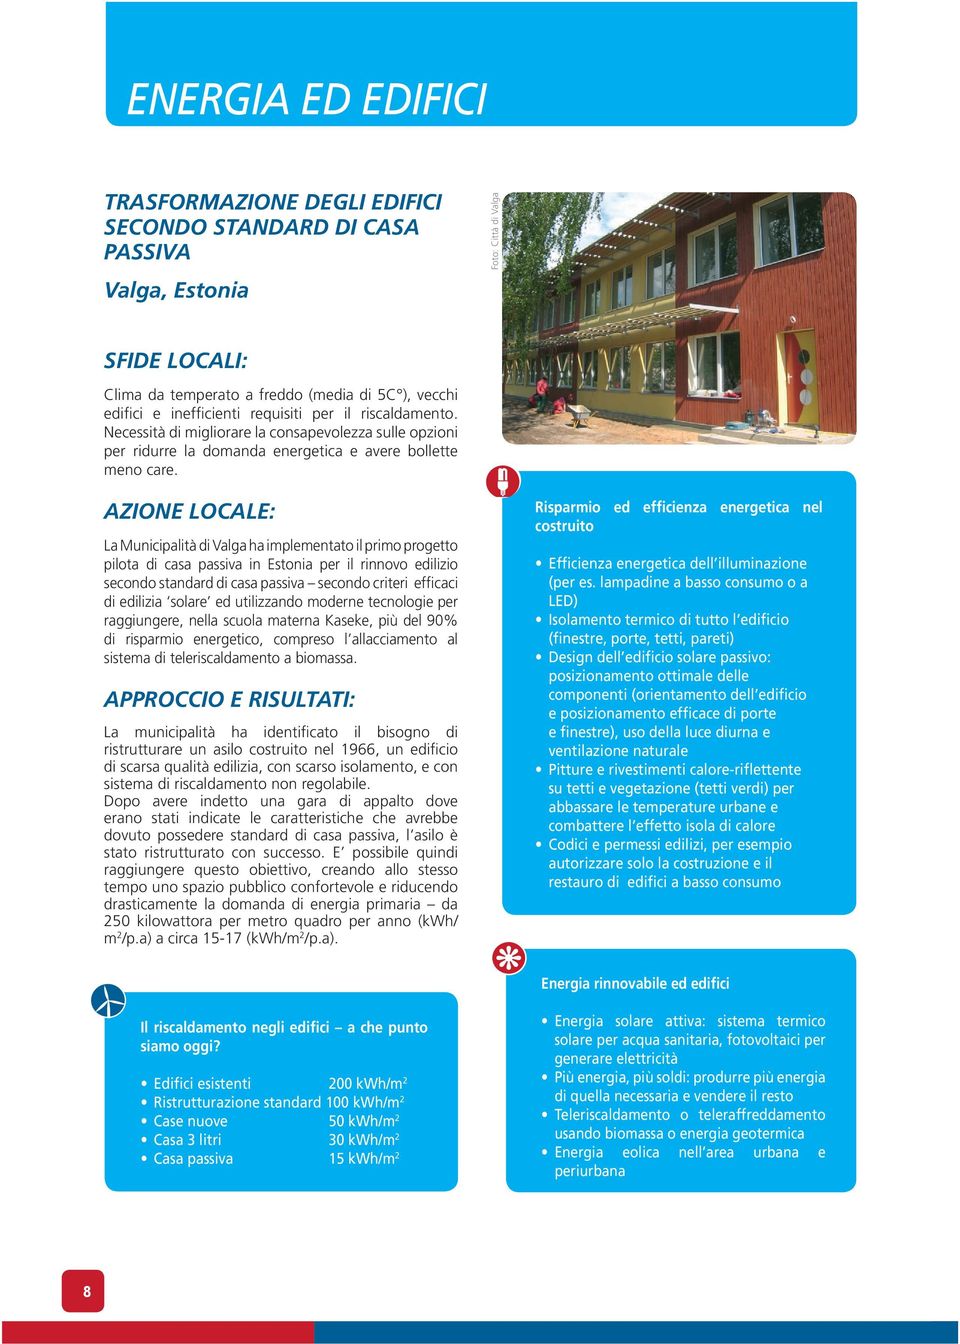 AZIONE LOCALE: La Municipalità di Valga ha implementato il primo progetto pilota di casa passiva in Estonia per il rinnovo edilizio secondo standard di casa passiva secondo criteri efficaci di